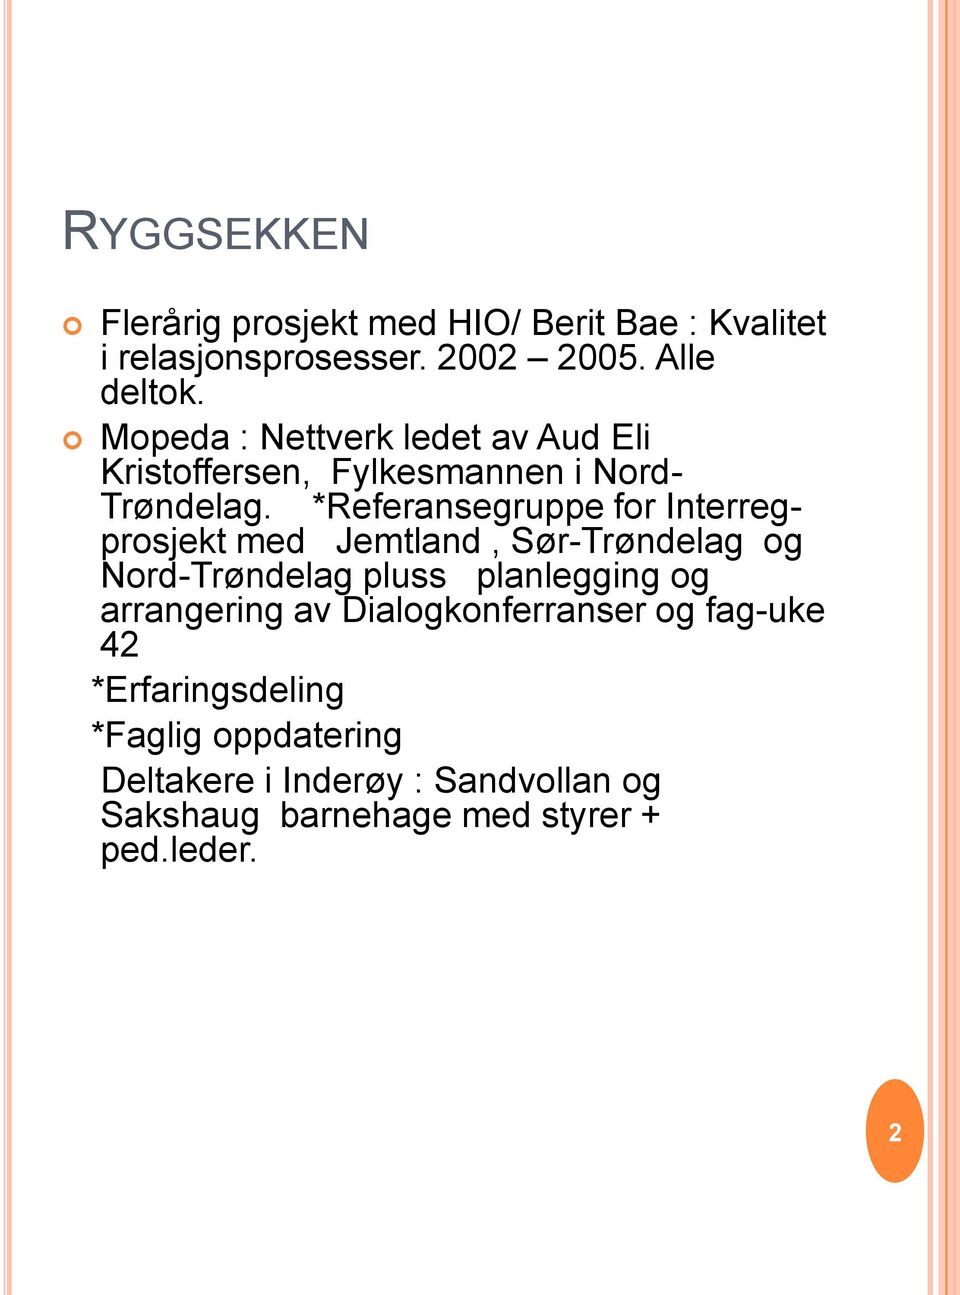 *Referansegruppe for Interregprosjekt med Jemtland, Sør-Trøndelag og Nord-Trøndelag pluss planlegging og